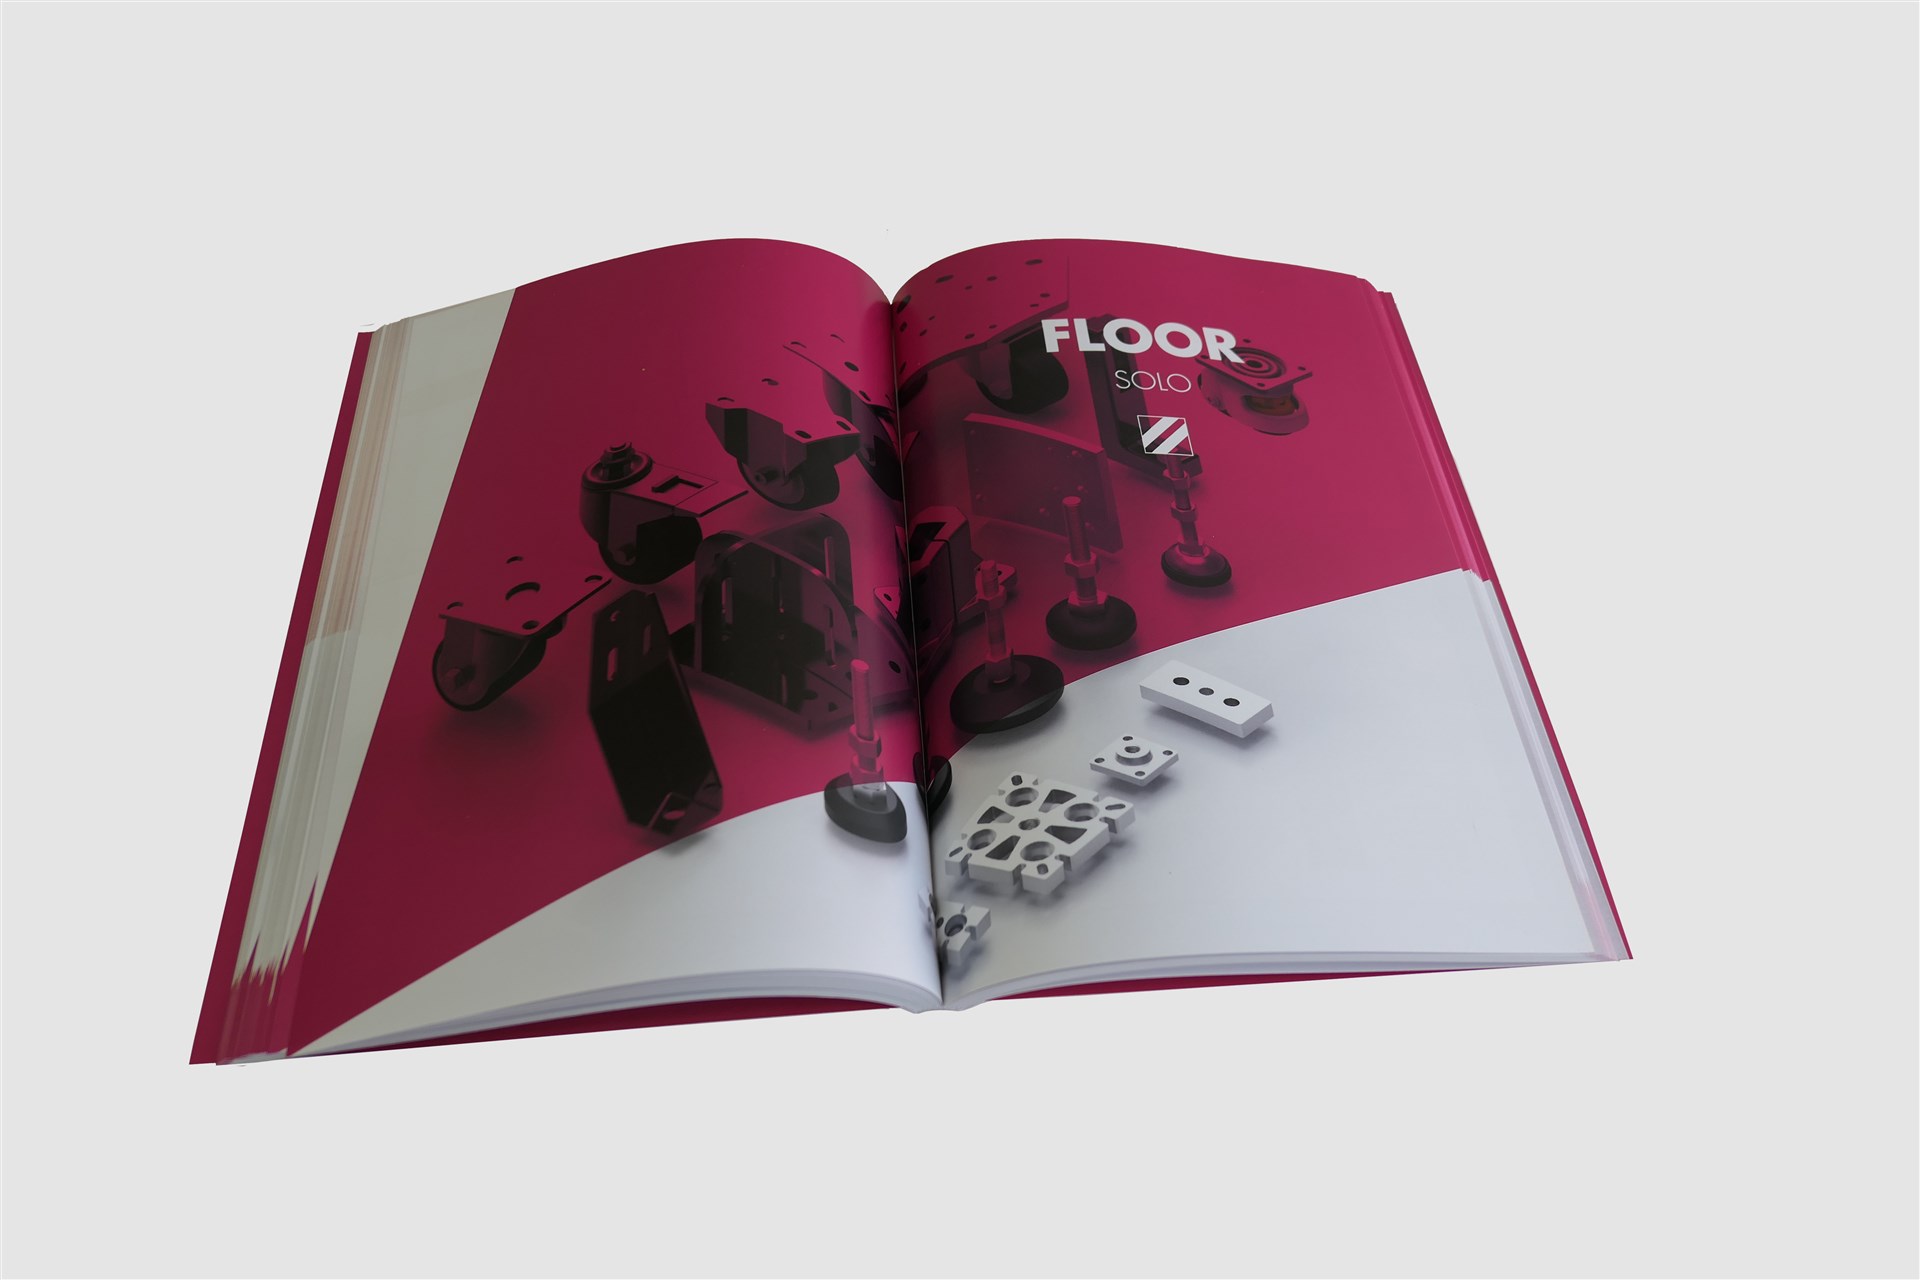  Catálogo “Wolweiss” com 178 páginas cozido e brochado a capa